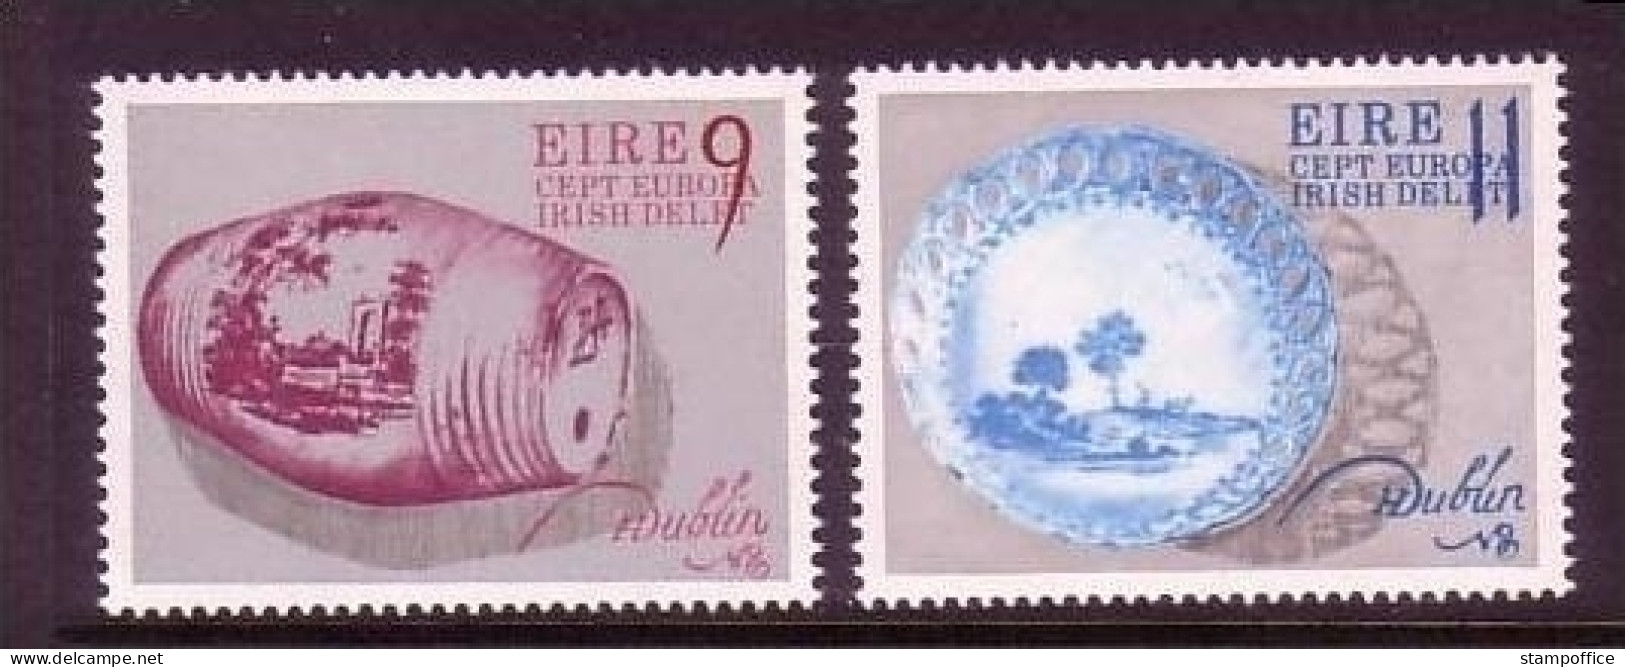 IRLAND MI-NR. 344-345 POSTFRISCH(MINT) EUROPA 1976 - KUNSTHANDWERK - 1976